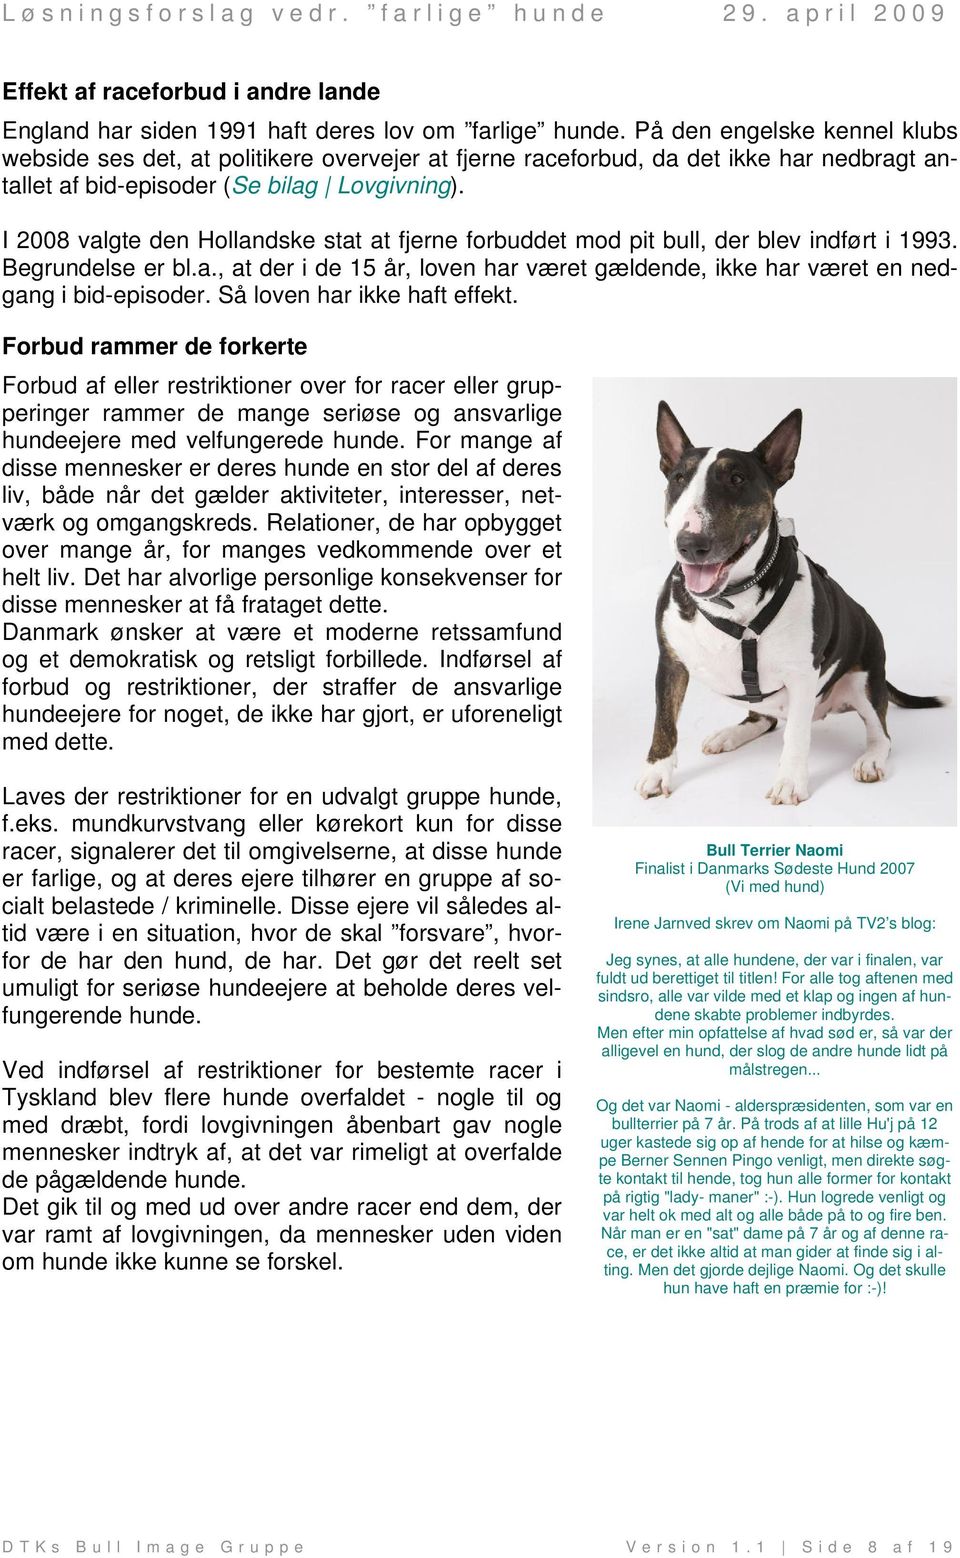 Sammenfatning Der er et uacceptabelt problem med farlige hunde i Danmark. -  PDF Gratis download